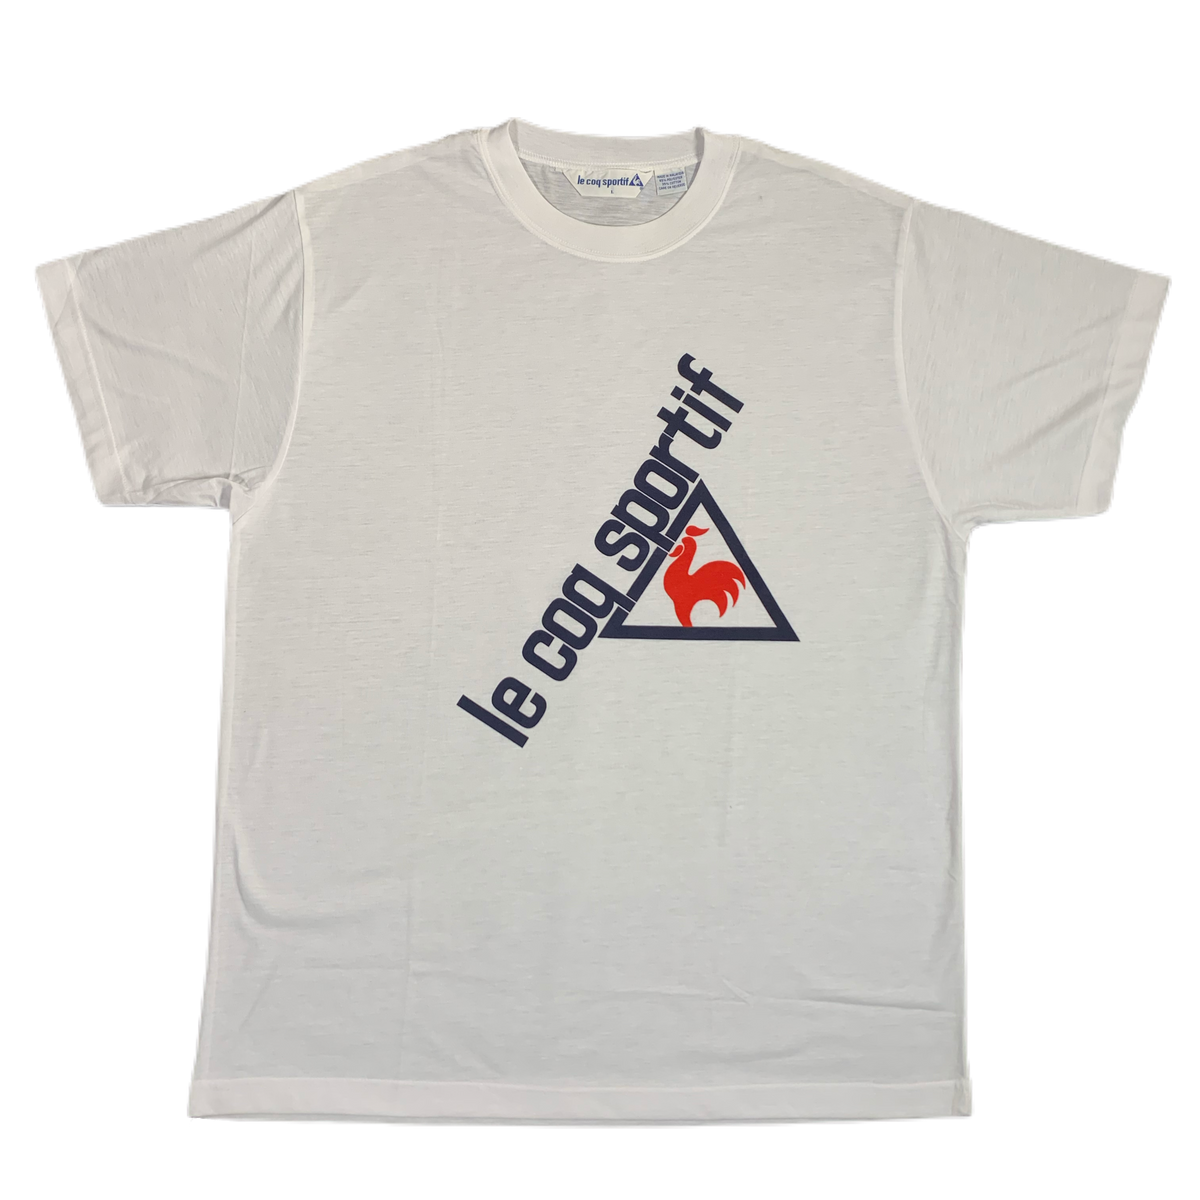 Vintage Le Coq Sportif “Logo” T-Shirt - jointcustodydc